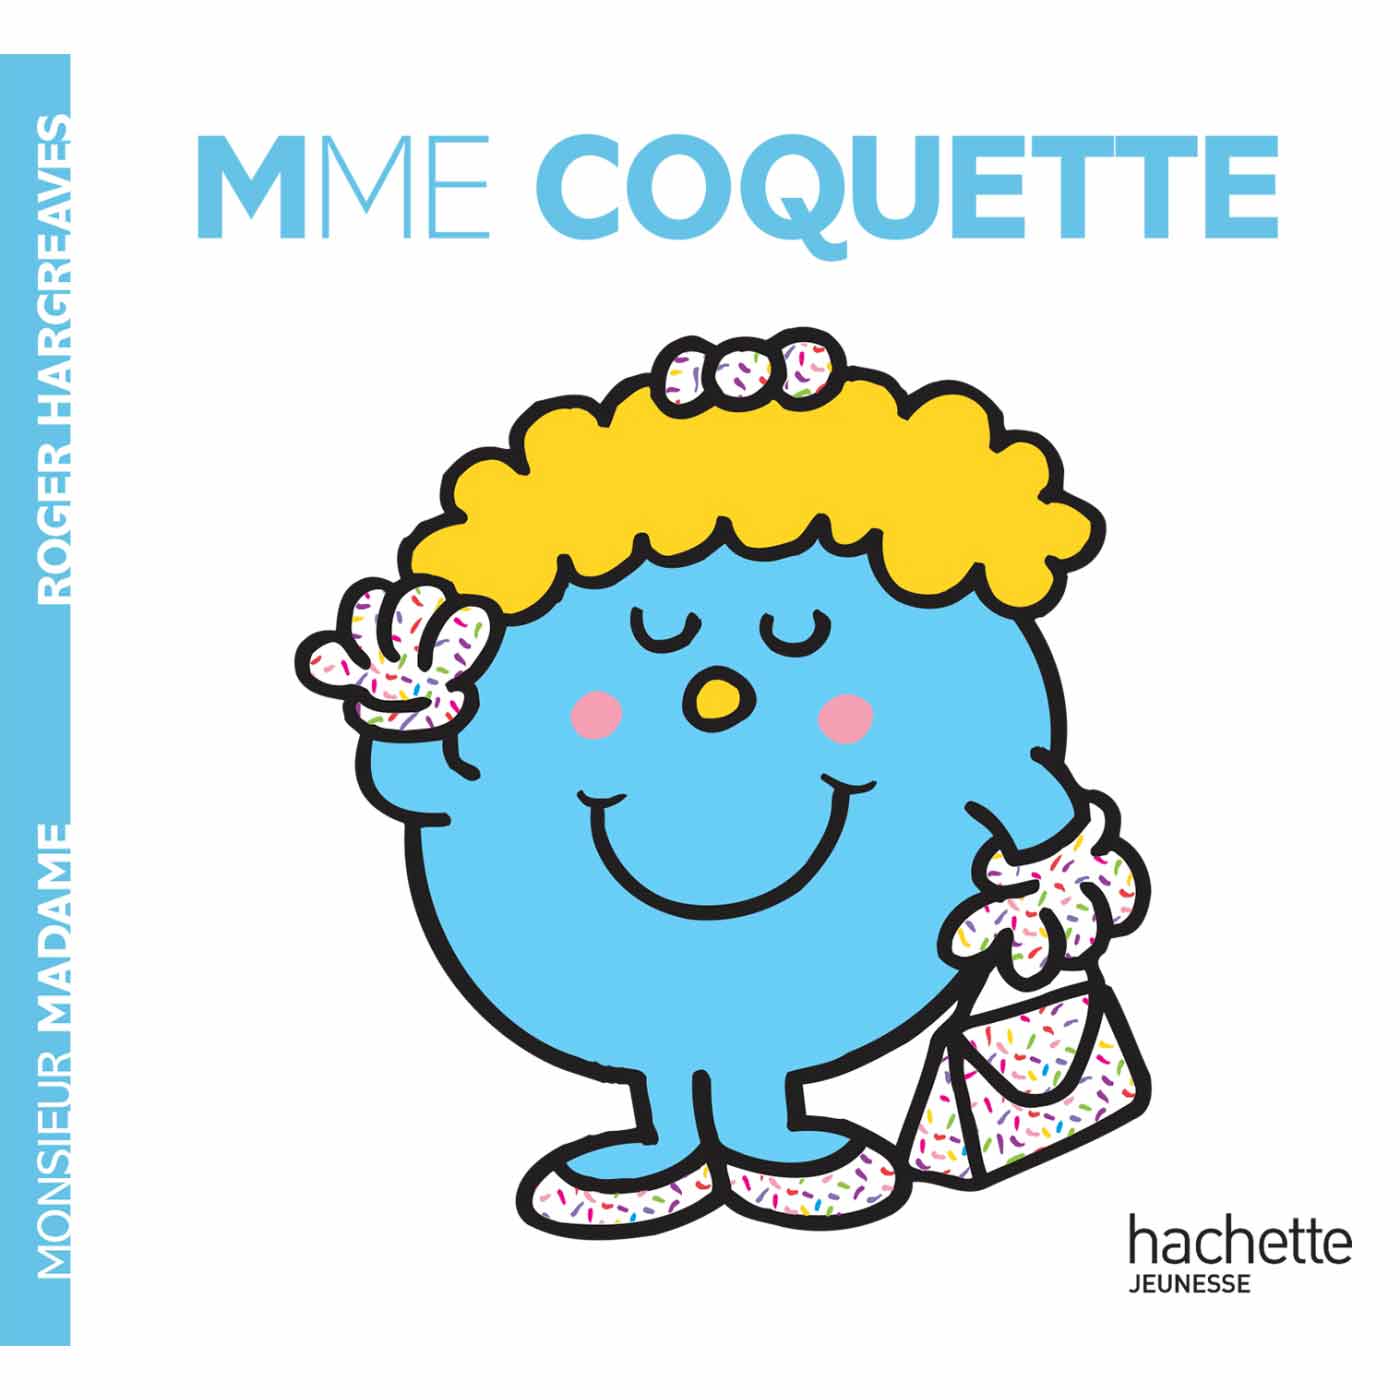 Monsieur Madame Les Madames Madame Coquette De Hachette Jeunesse